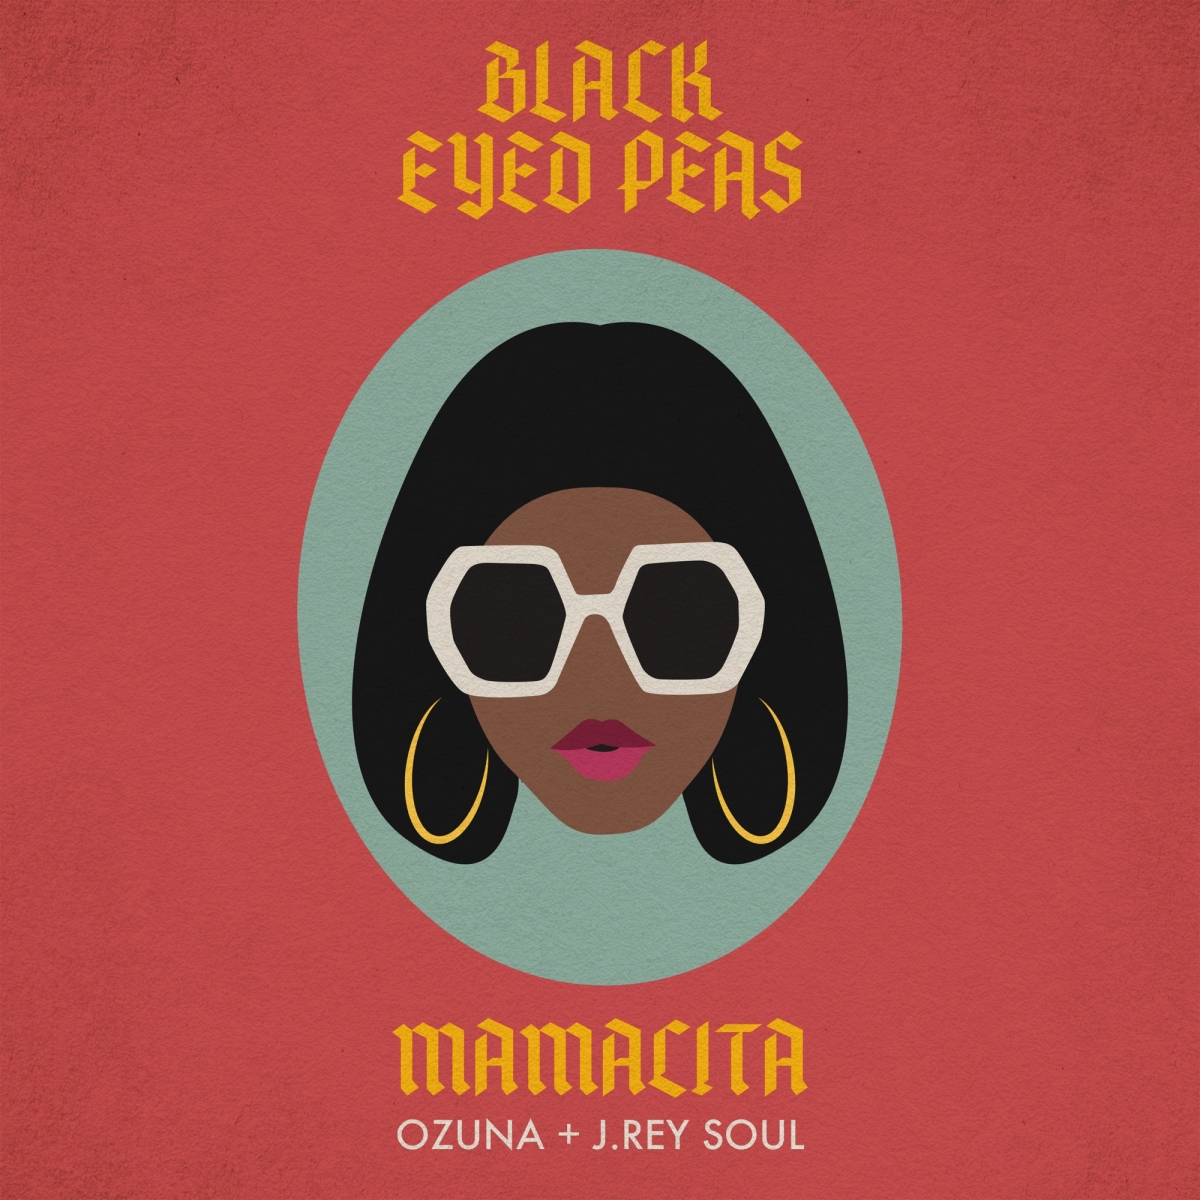 THE BLACK EYED PEAS - Mamacita